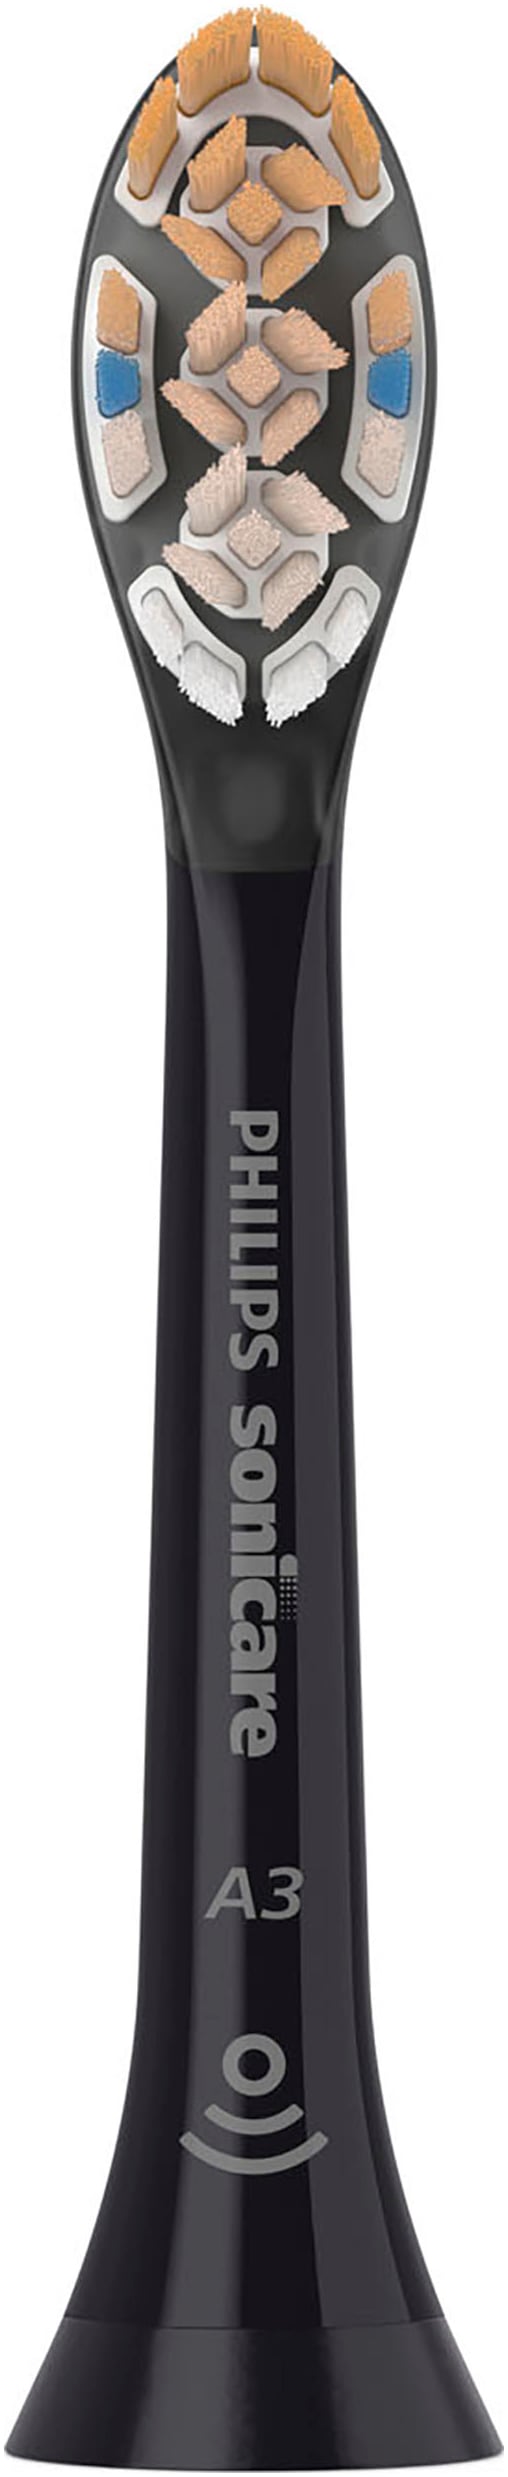 Philips Sonicare Aufsteckbürsten »A3 Premium All-in-One«, aufsteckbar, BrushSync-fähig, Standardgrösse